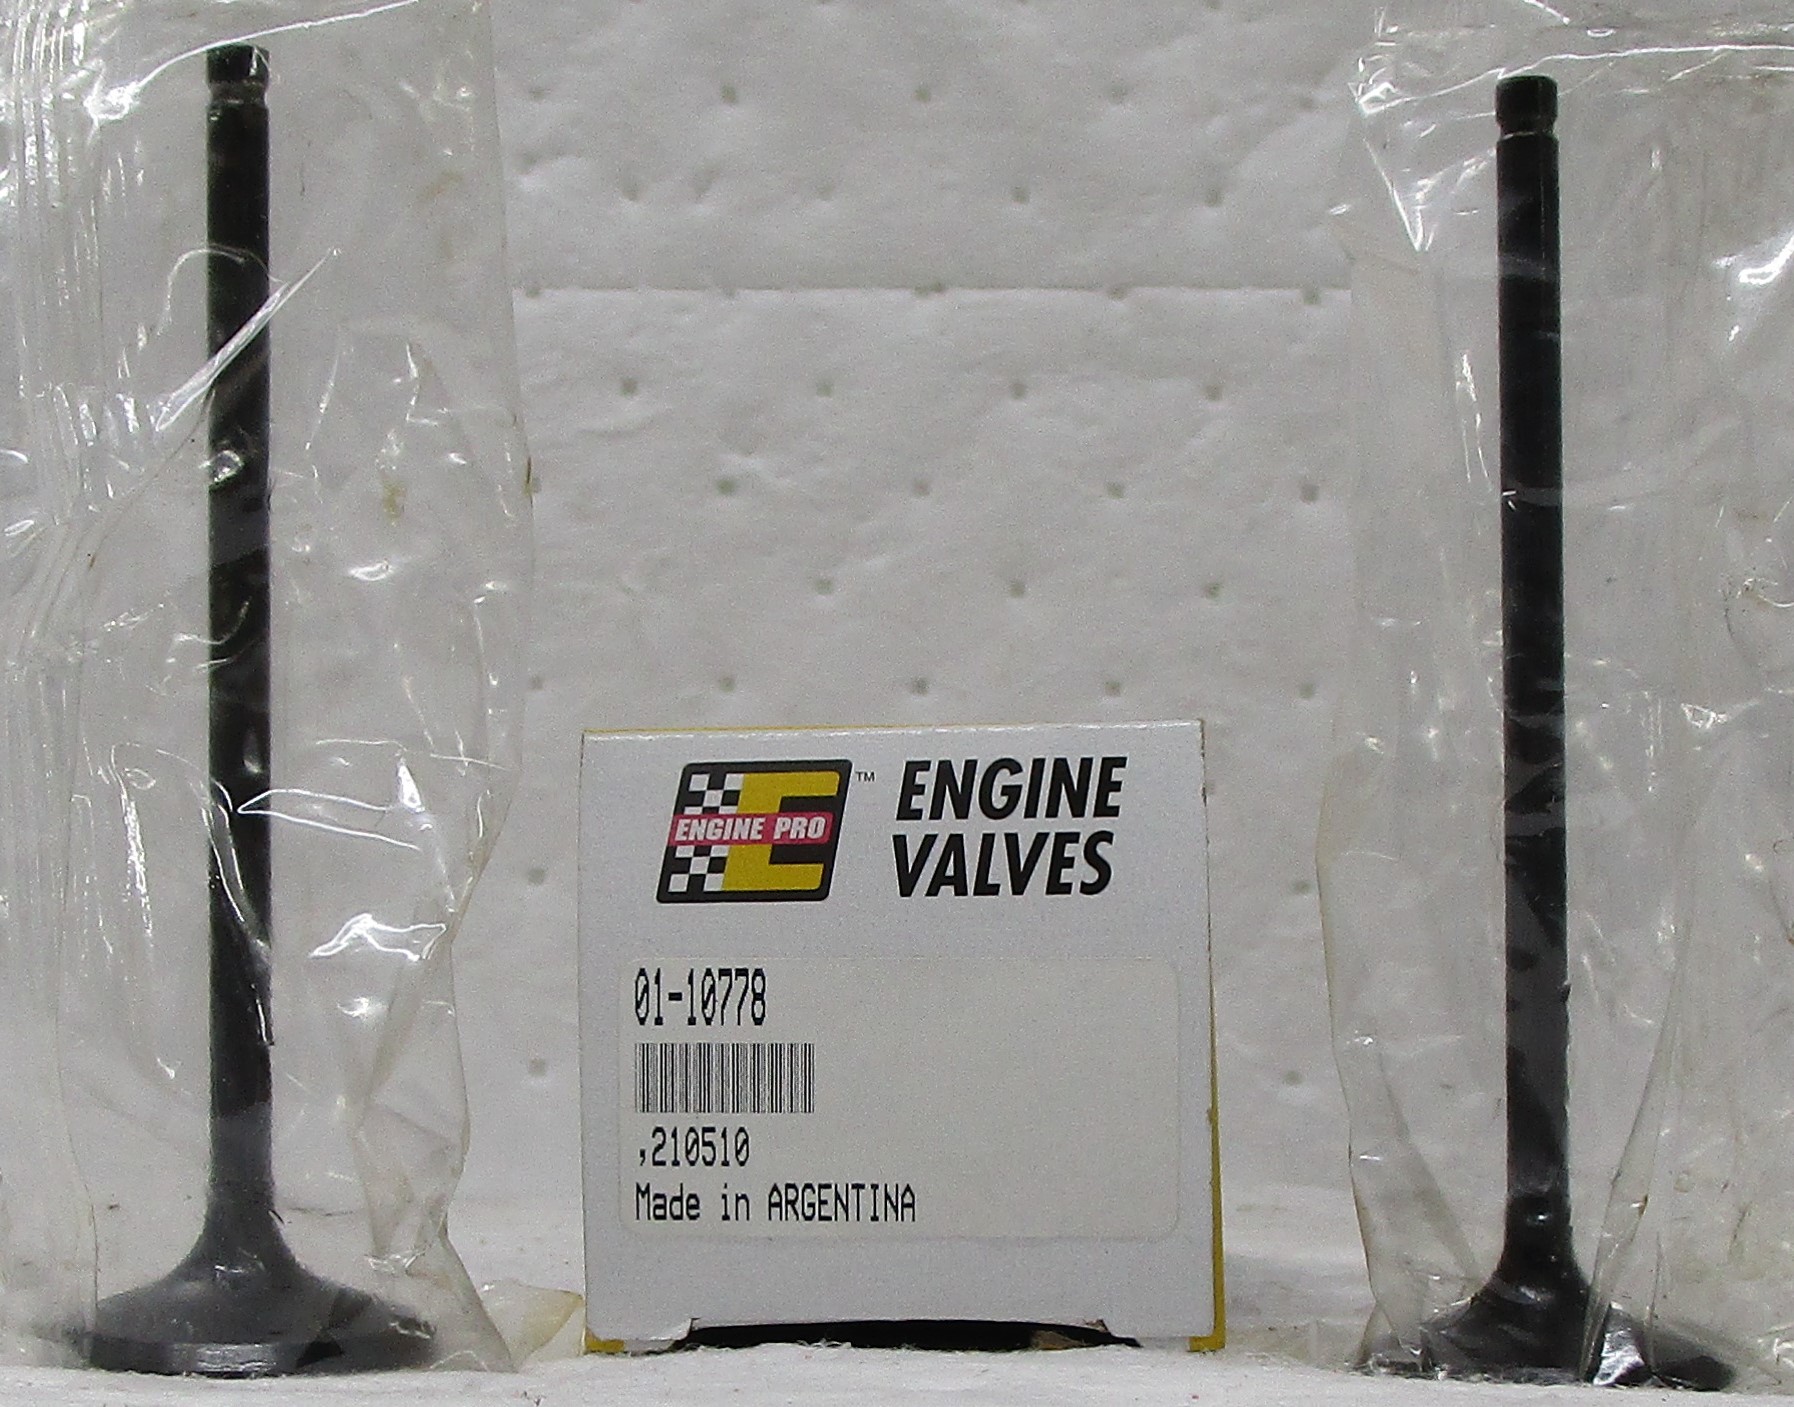 Engine Cylinder Head Intake Valve Compatible With : 2002-2010 Honda Oddysey V6, 3.5L 3471c.c., SOHC 24 Valve I-VTEC, Engine Code : J35A6 -  2001-2008 Acura TL 3.2L/3210 CID, SOHC 24 Valve, VTEC, Engine Code : J35A9